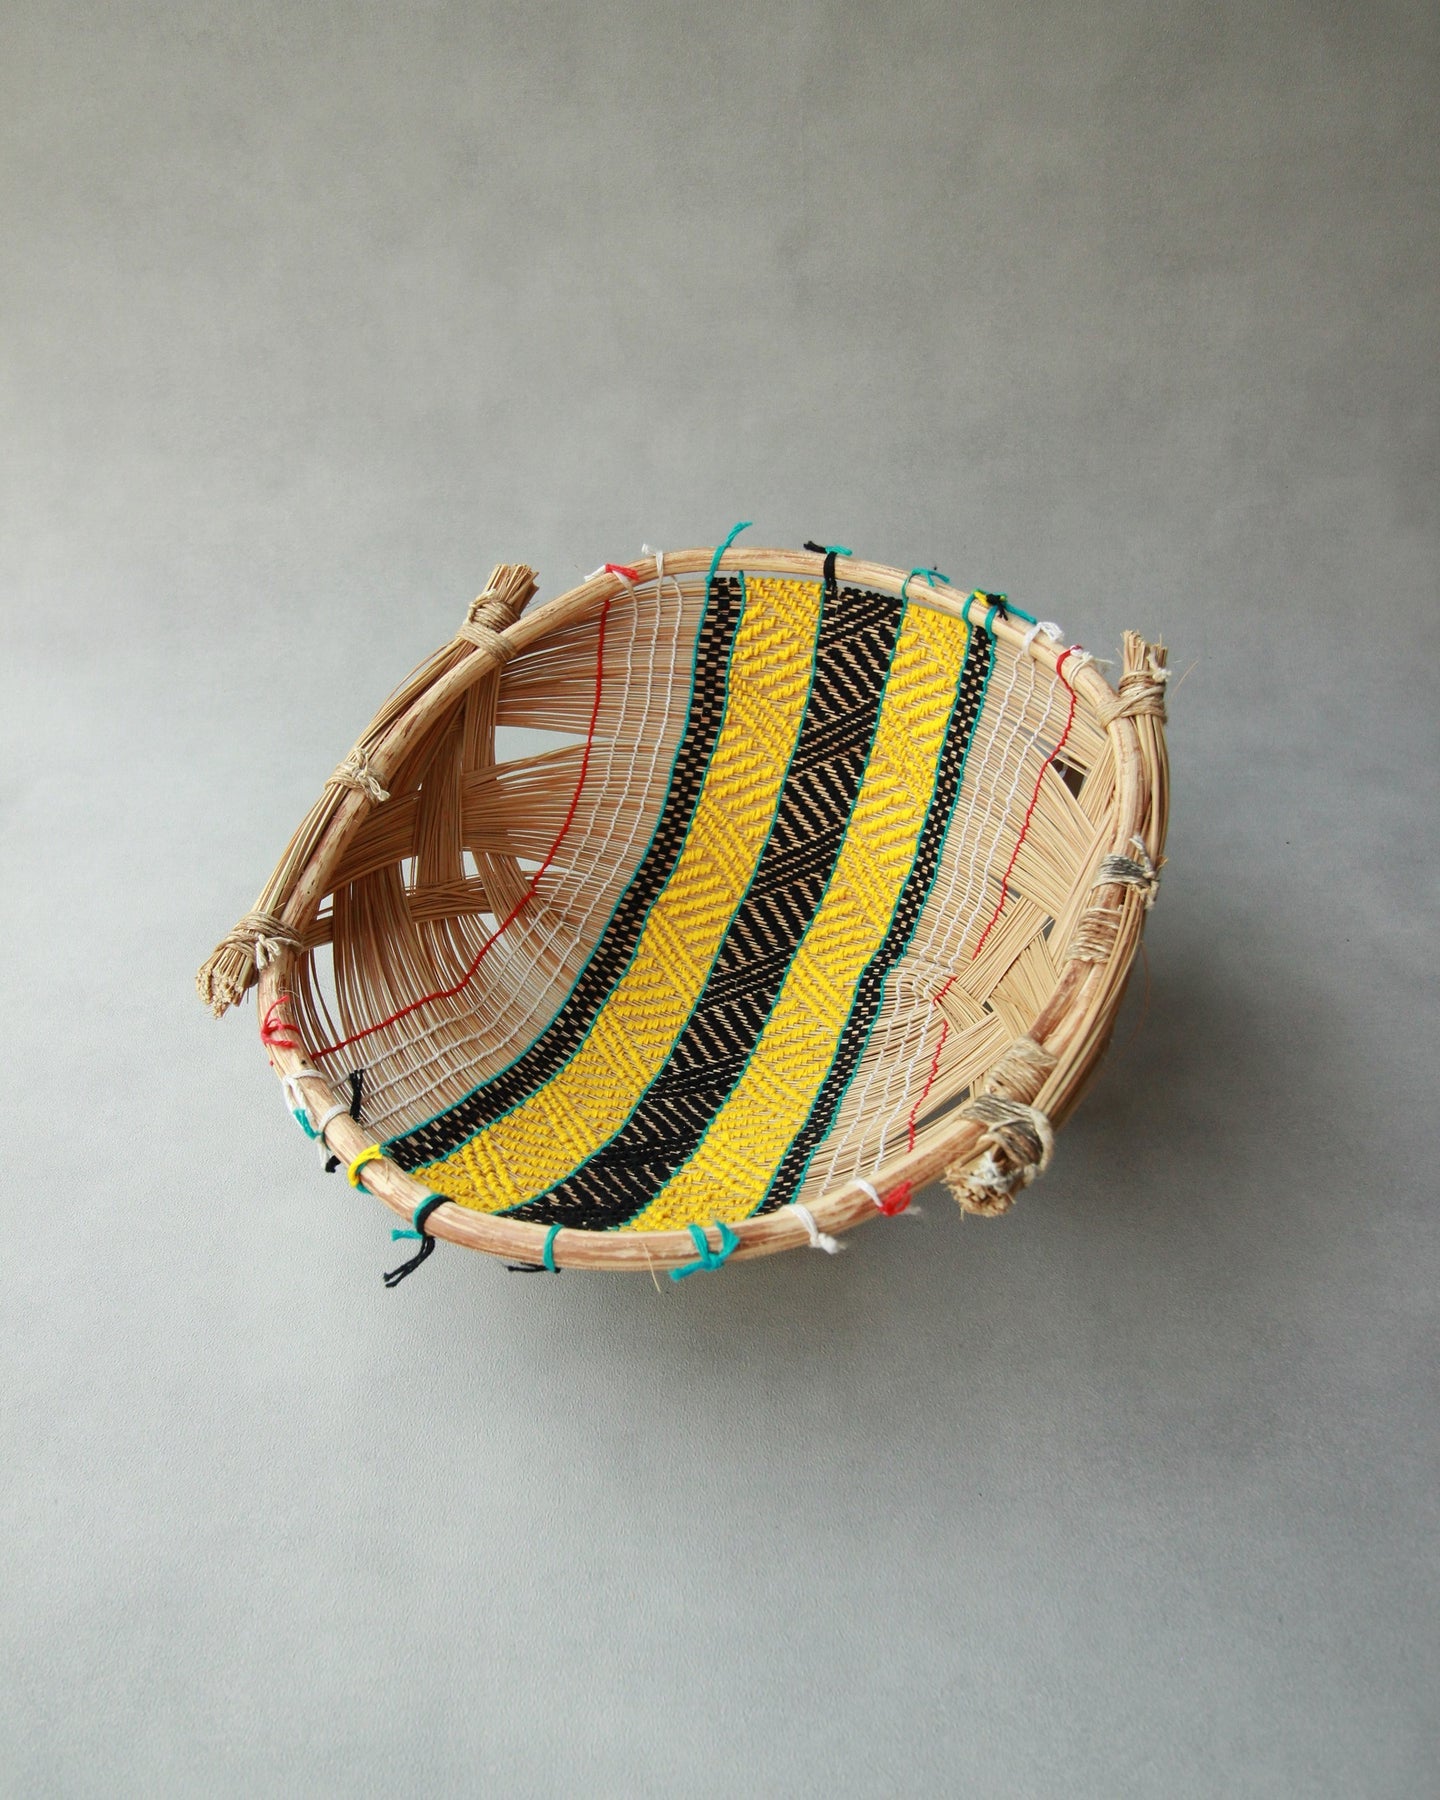 【INCAUSA】Fishing Basket